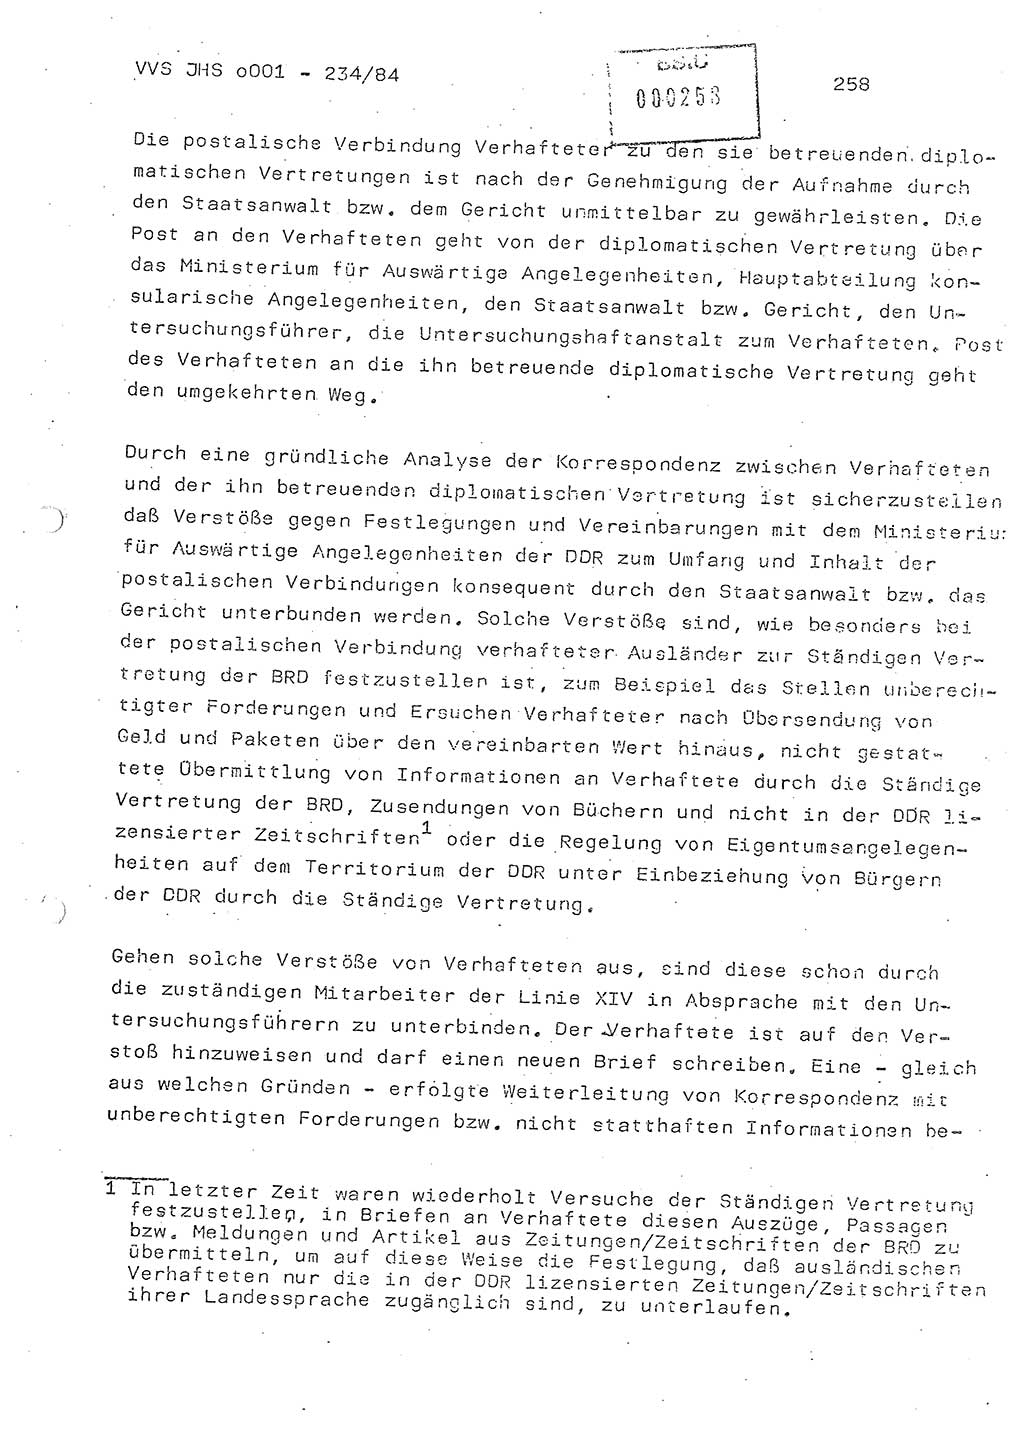 Dissertation Oberst Siegfried Rataizick (Abt. ⅩⅣ), Oberstleutnant Volkmar Heinz (Abt. ⅩⅣ), Oberstleutnant Werner Stein (HA Ⅸ), Hauptmann Heinz Conrad (JHS), Ministerium für Staatssicherheit (MfS) [Deutsche Demokratische Republik (DDR)], Juristische Hochschule (JHS), Vertrauliche Verschlußsache (VVS) o001-234/84, Potsdam 1984, Seite 258 (Diss. MfS DDR JHS VVS o001-234/84 1984, S. 258)